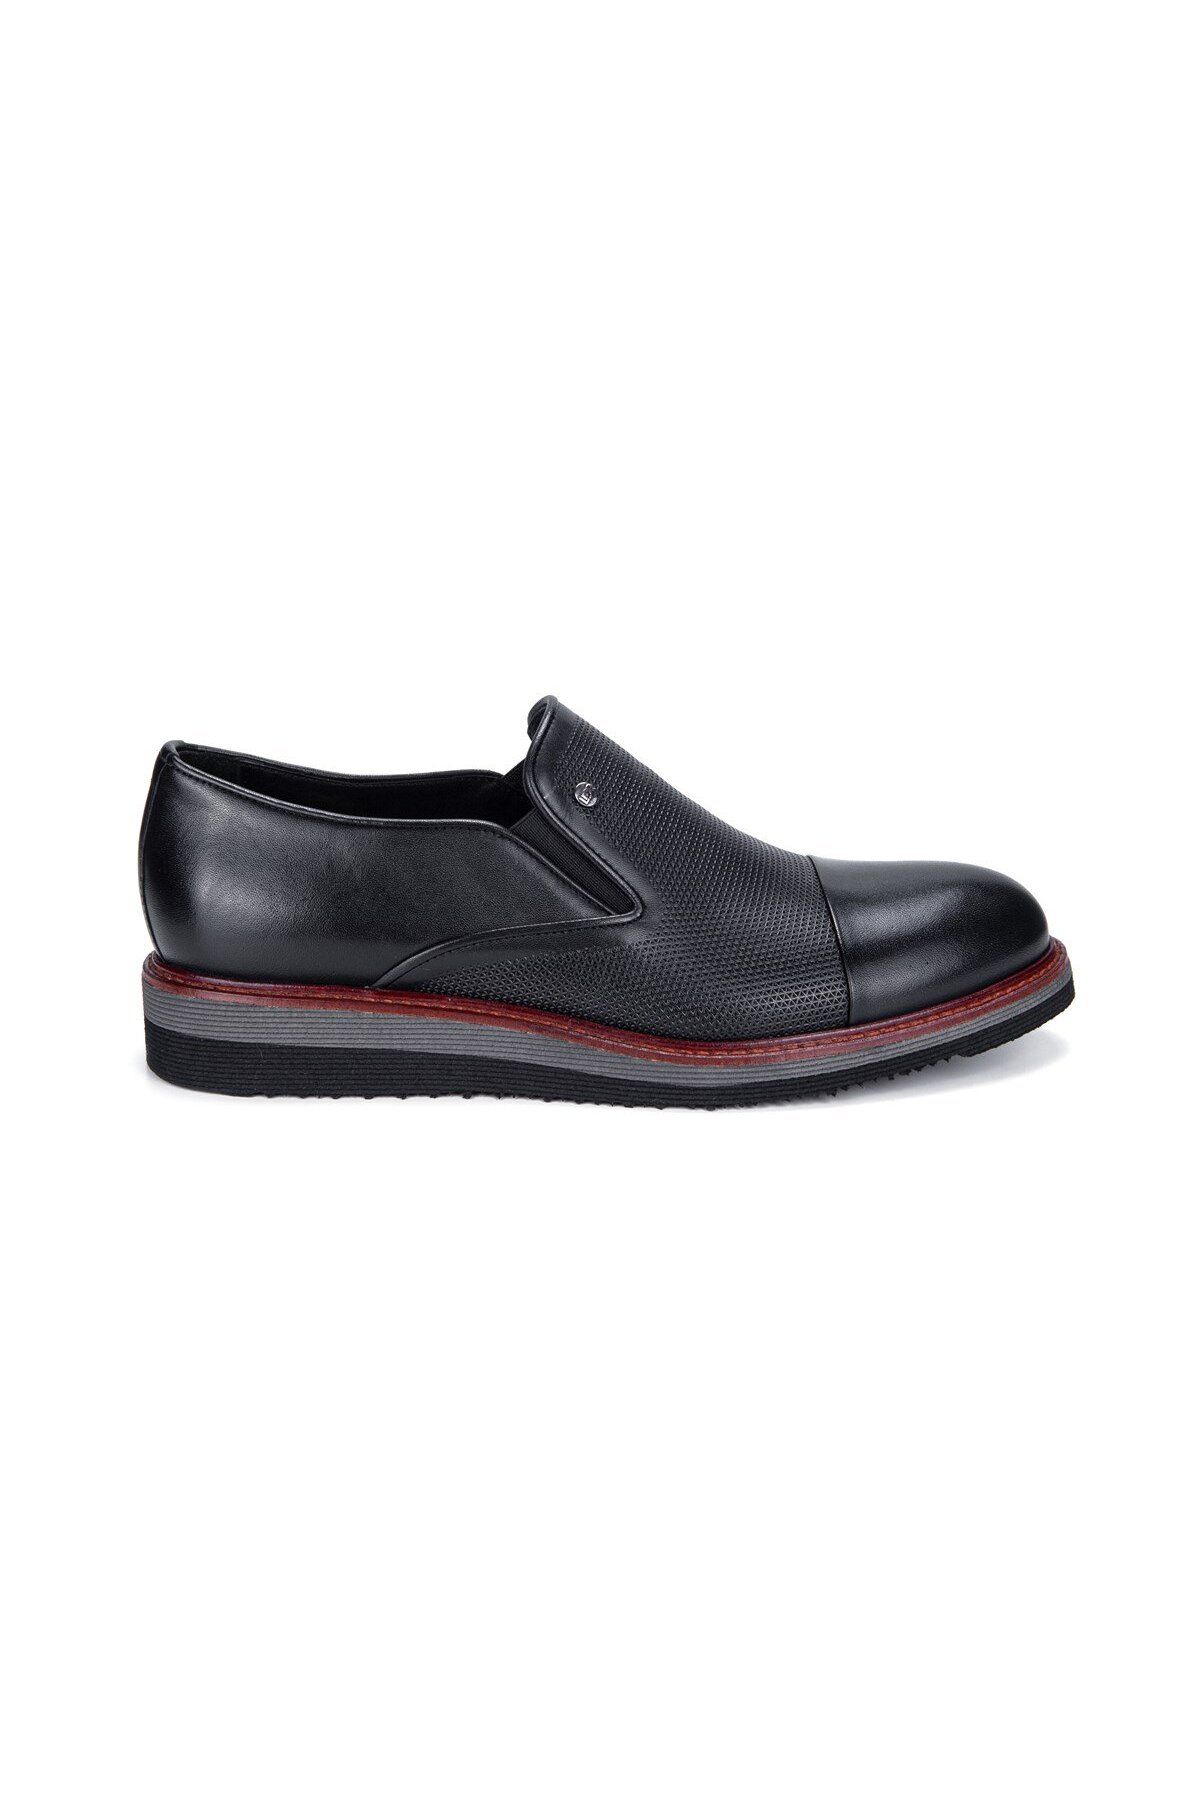 Libero 3614 Siyah Hakiki Deri Eva Düz Taban Erkek Günlük Casual Klasik Ayakkabı